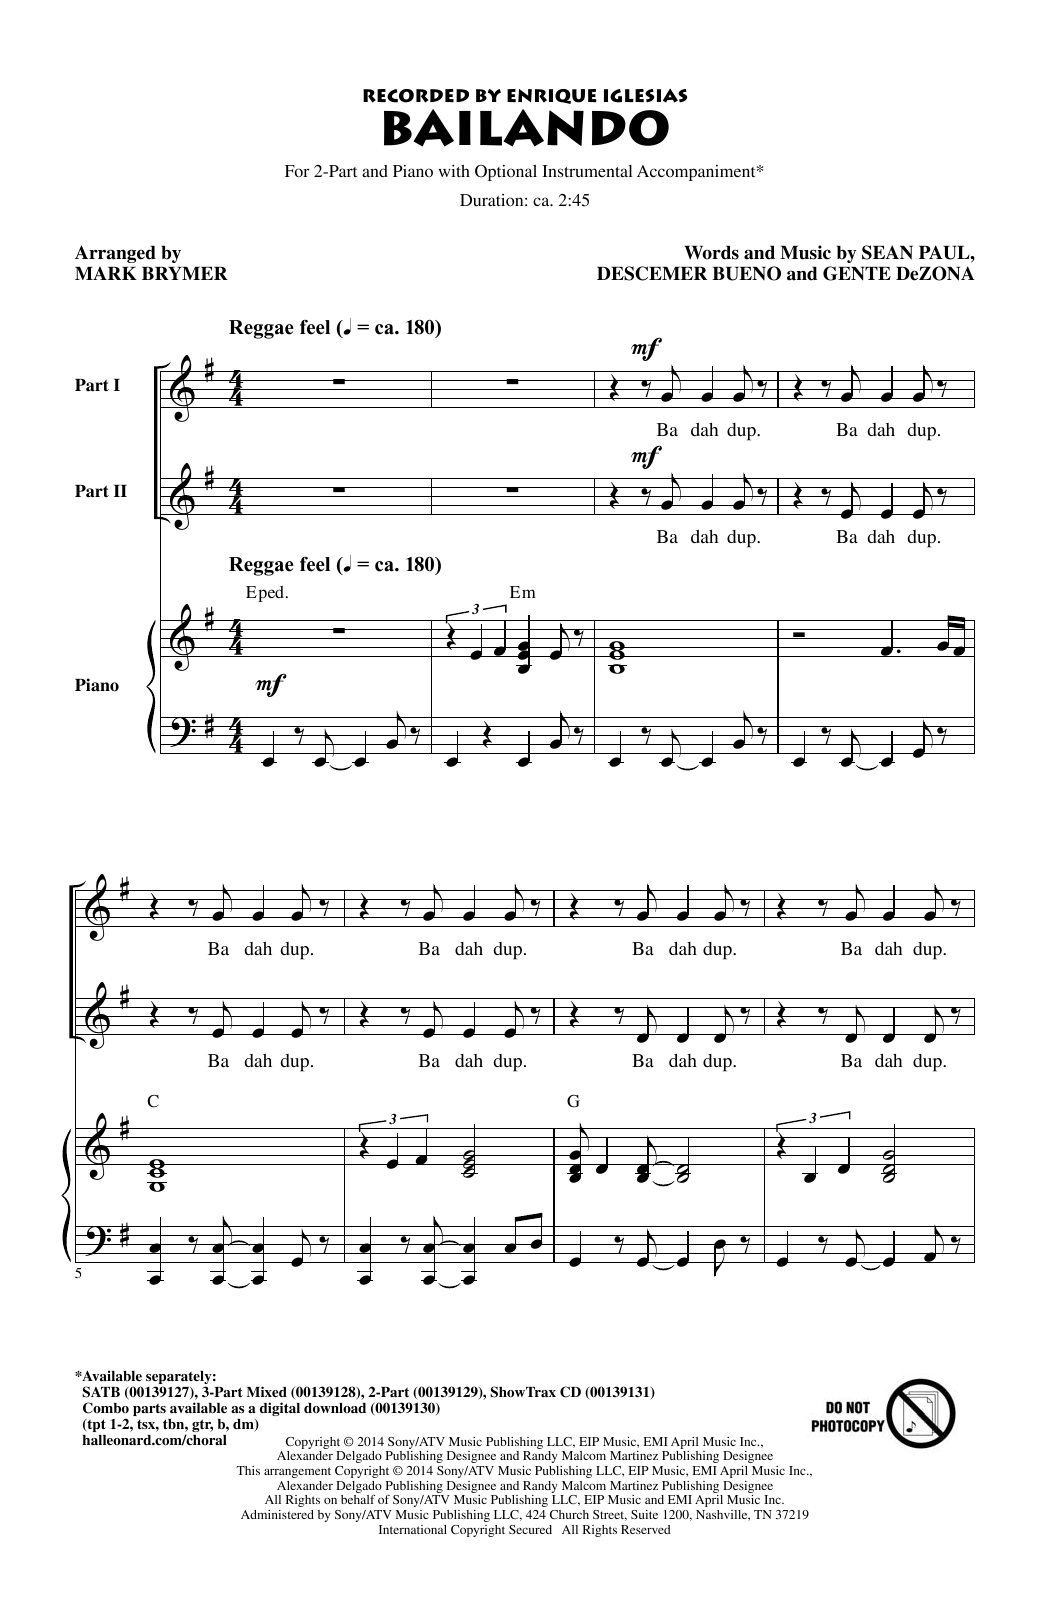 Enrique Iglesias Featuring Descemer Bueno and Gente de Zona Bailando (arr. Mark Brymer) sheet music notes and chords arranged for SATB Choir